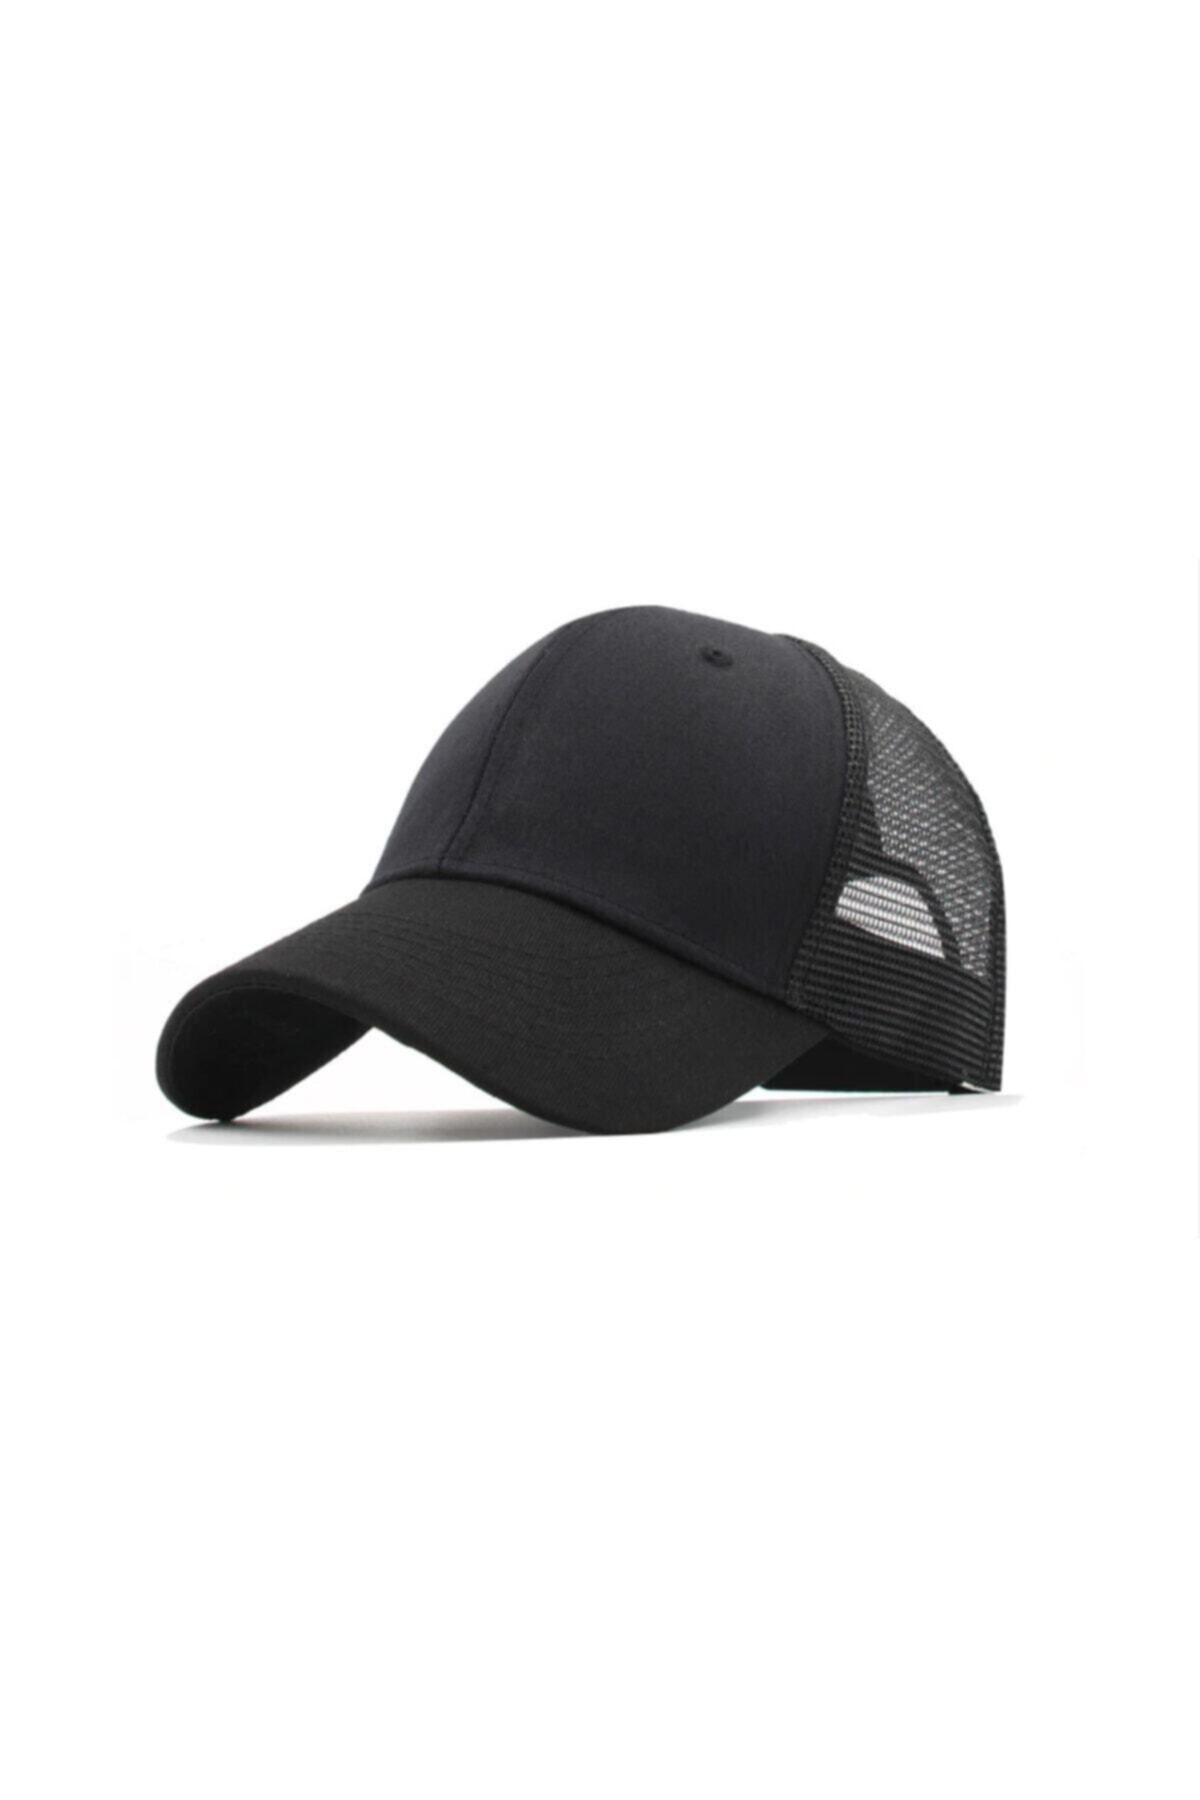 PRC şapka Yazlık Örme Fileli Düz Renk Arkası Ayaralanabilir Şapka Kepler Fileli Şapka Pamuklu Şapka